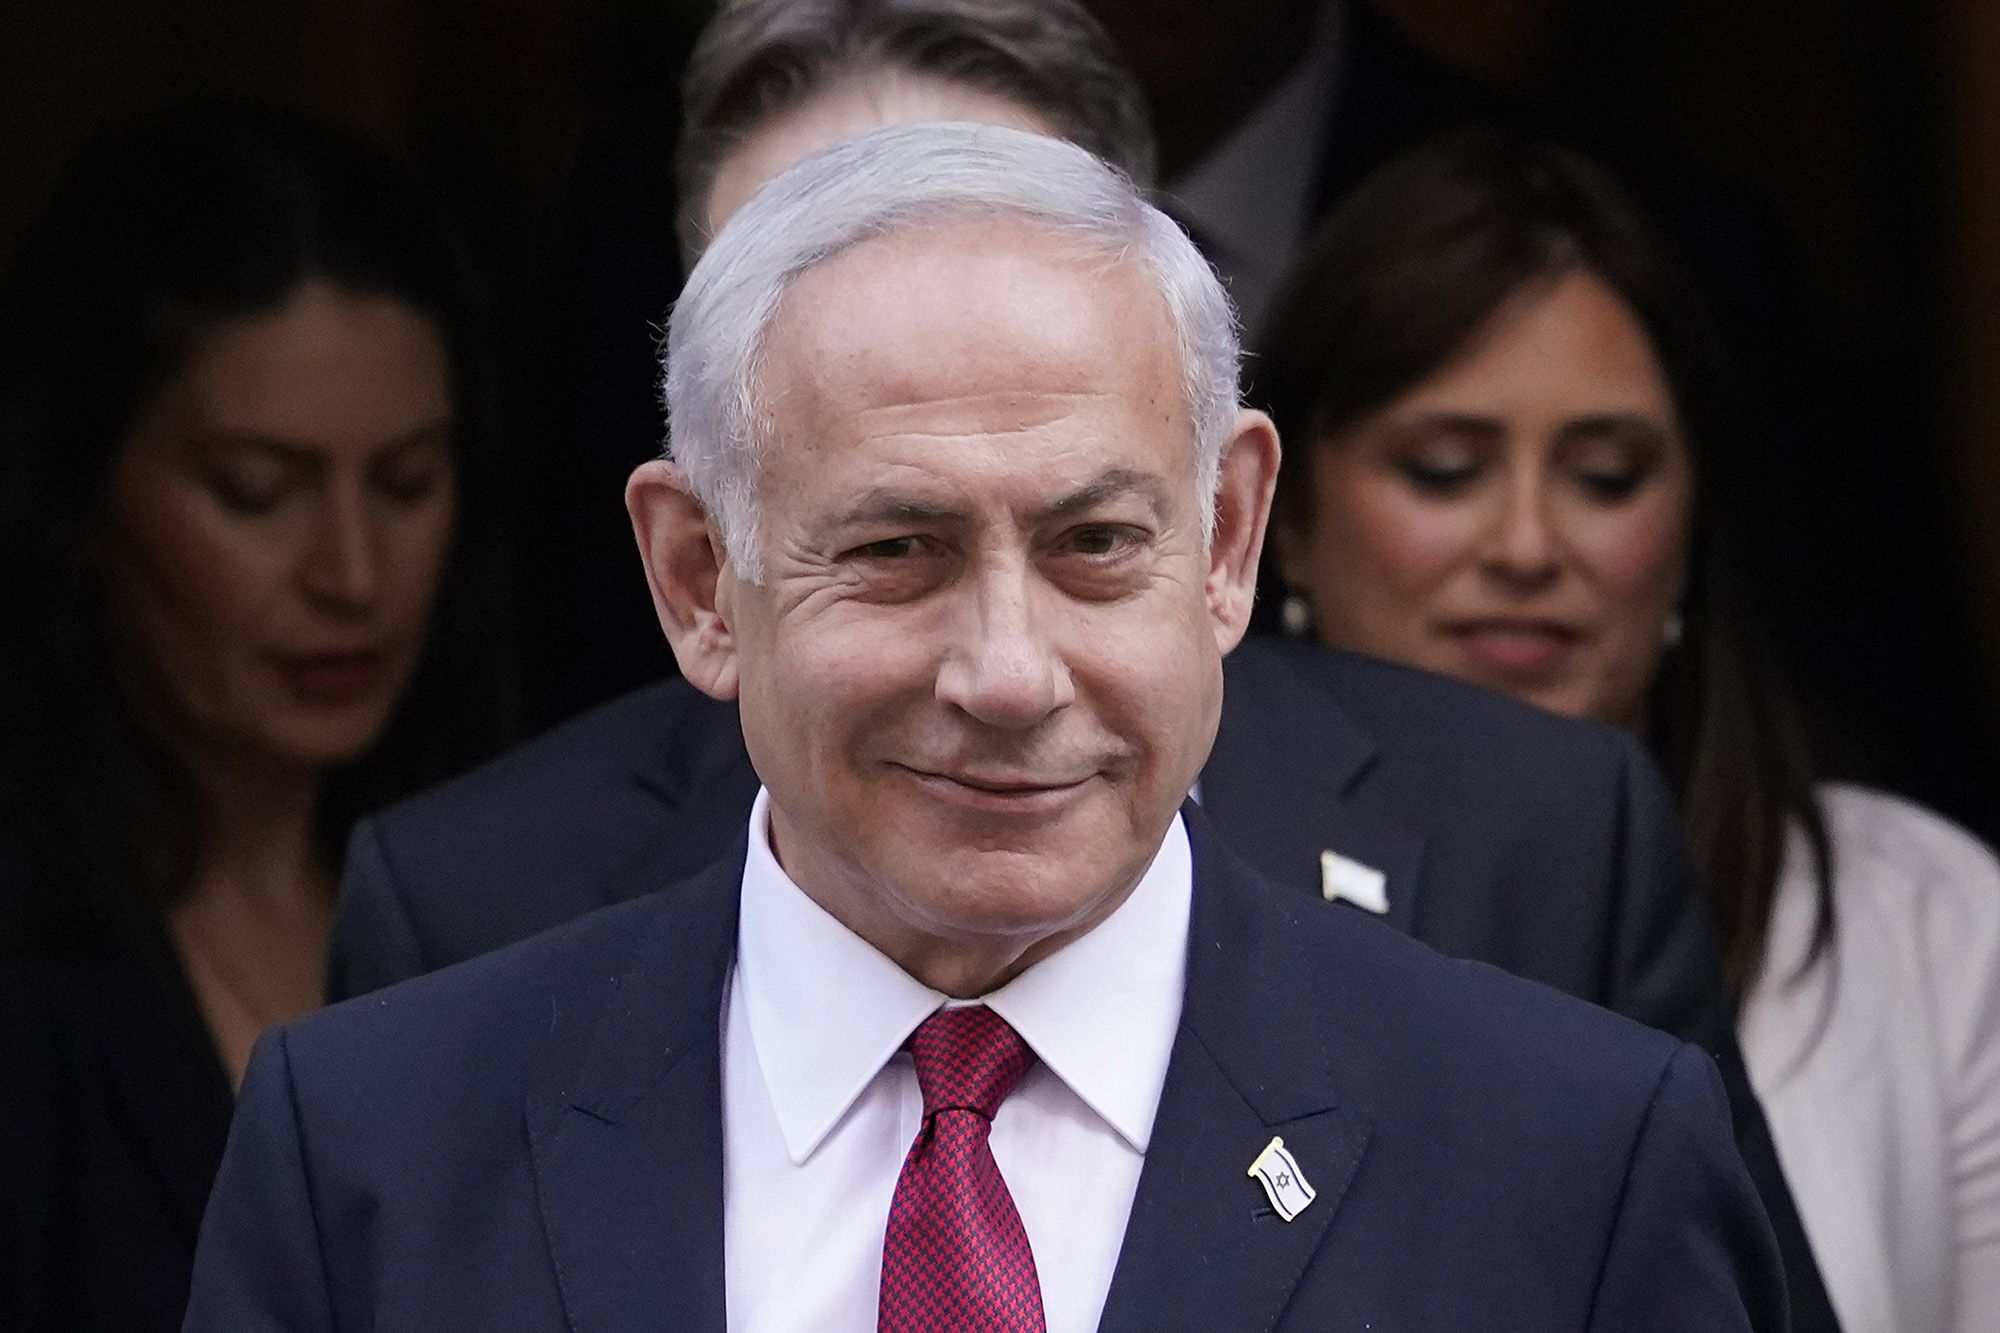 “HƏMAS məhv edilmədən dayanmayacağıq” - Netanyahu